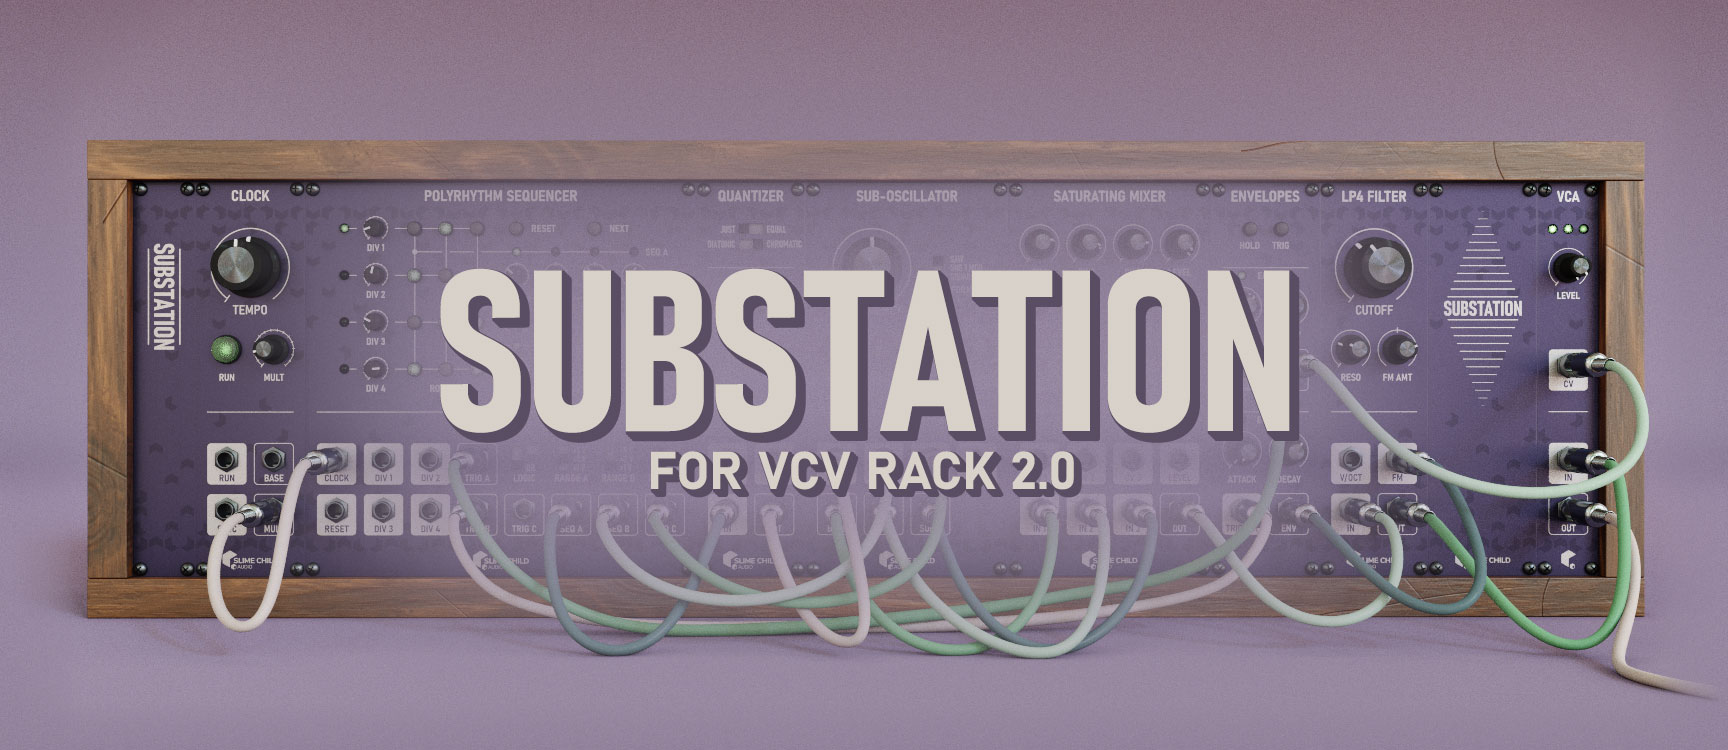 Substation for VCV Rack 2.0